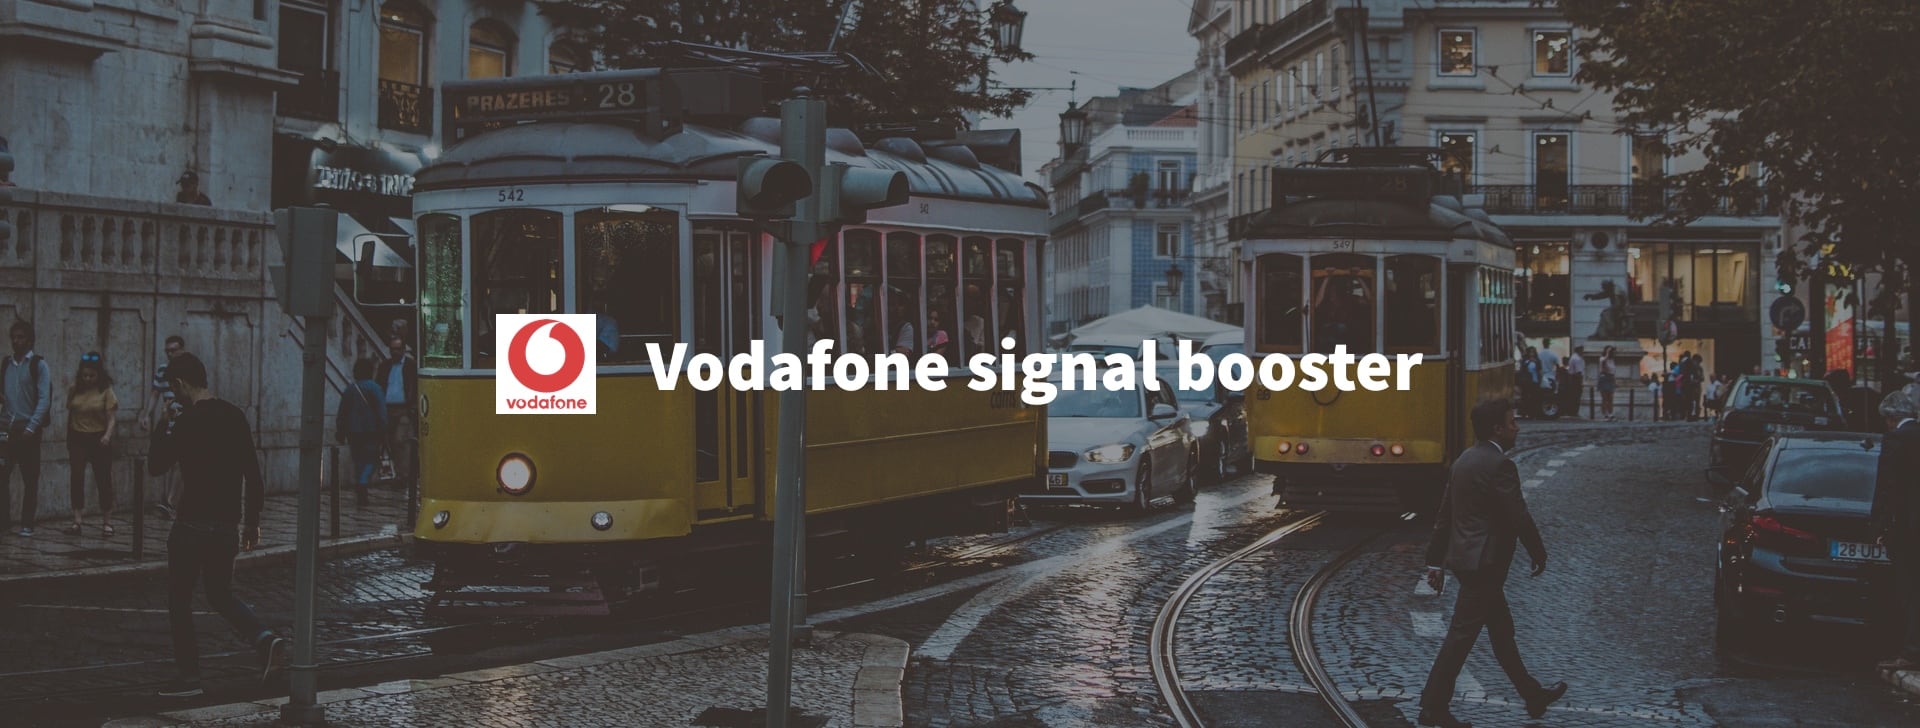 Vodafone mobile signal